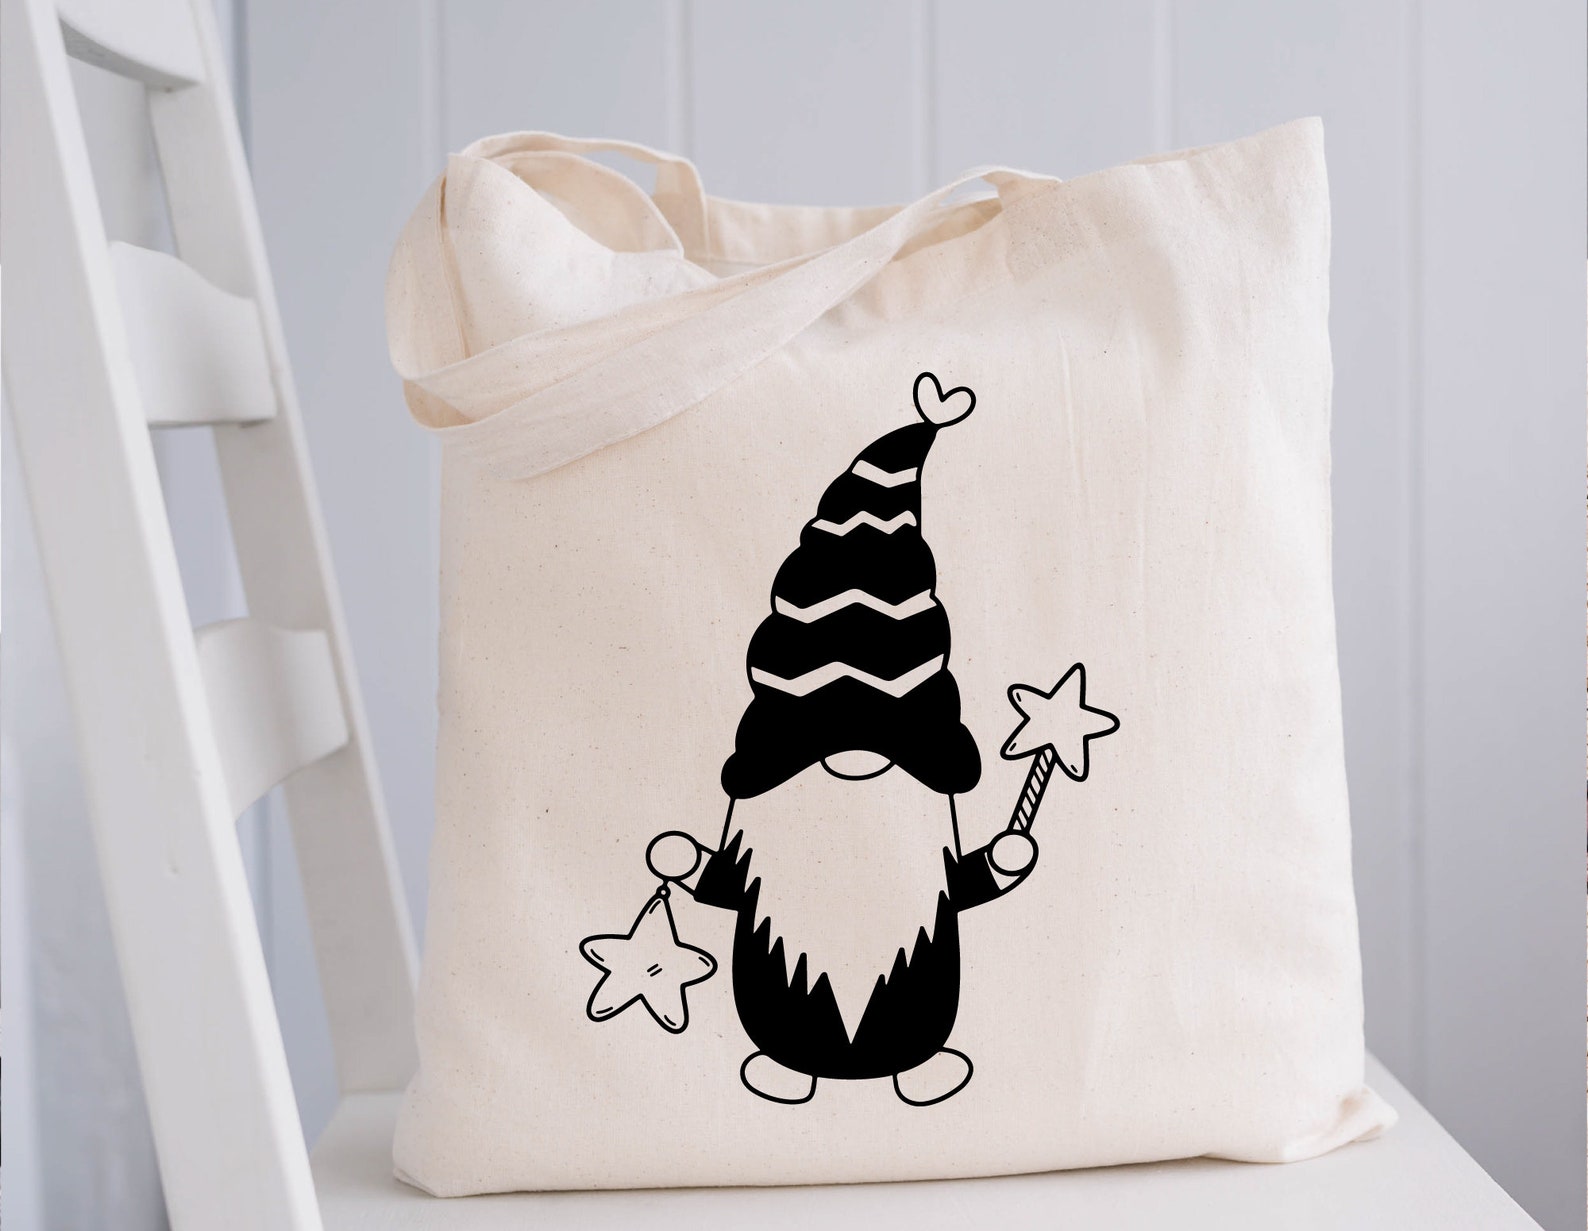 Magic gnome on the eco bag.